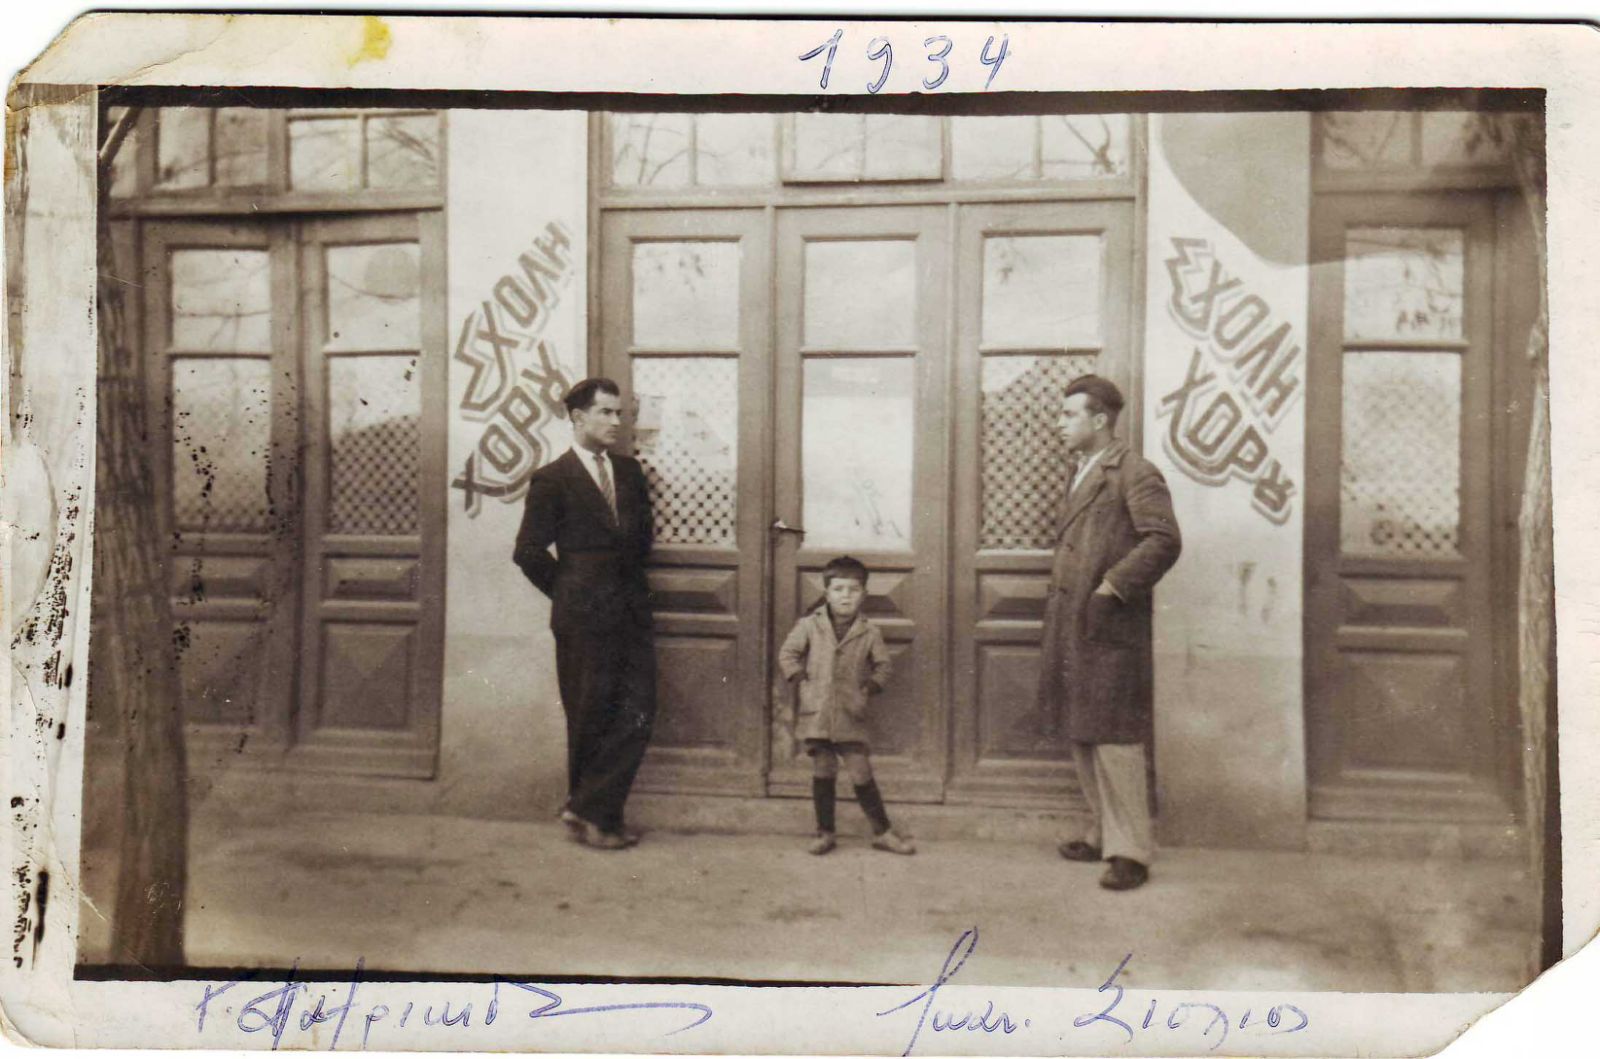 Πτολεμαΐς 1934 - Πατρικίδης Γεώργιος και Ιωάννης Σιόλιος